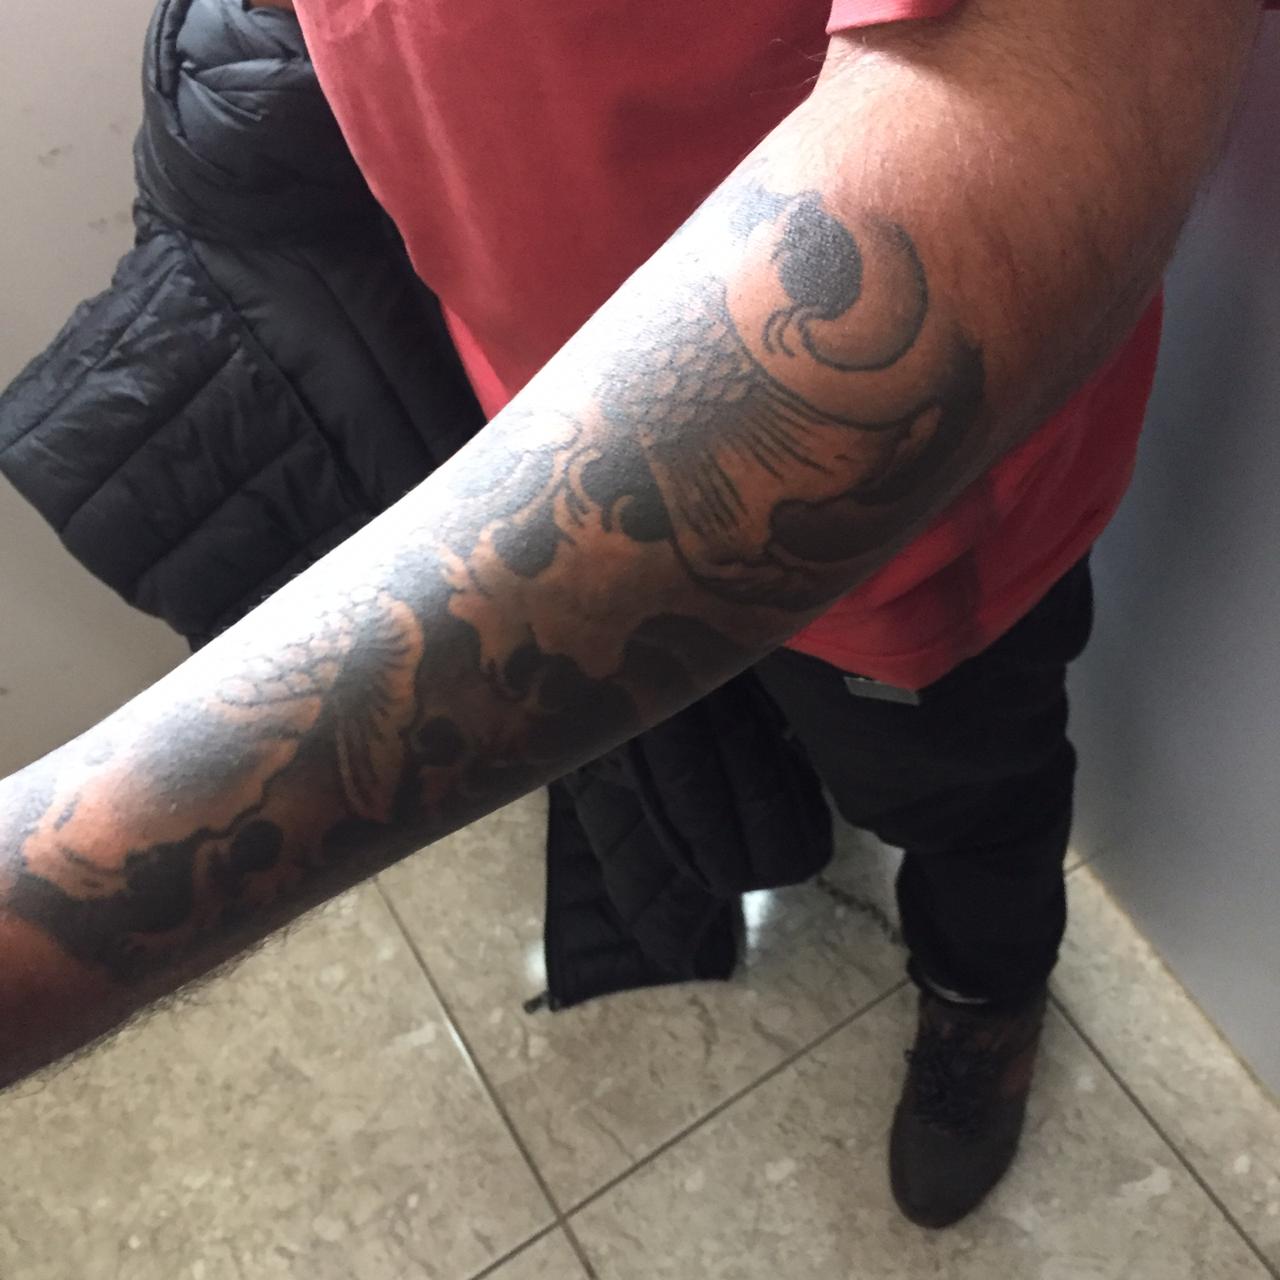 Tatuagem do suspeito, reconhecida pelas vítimas. Foto: Divulgação/Polícia Civil